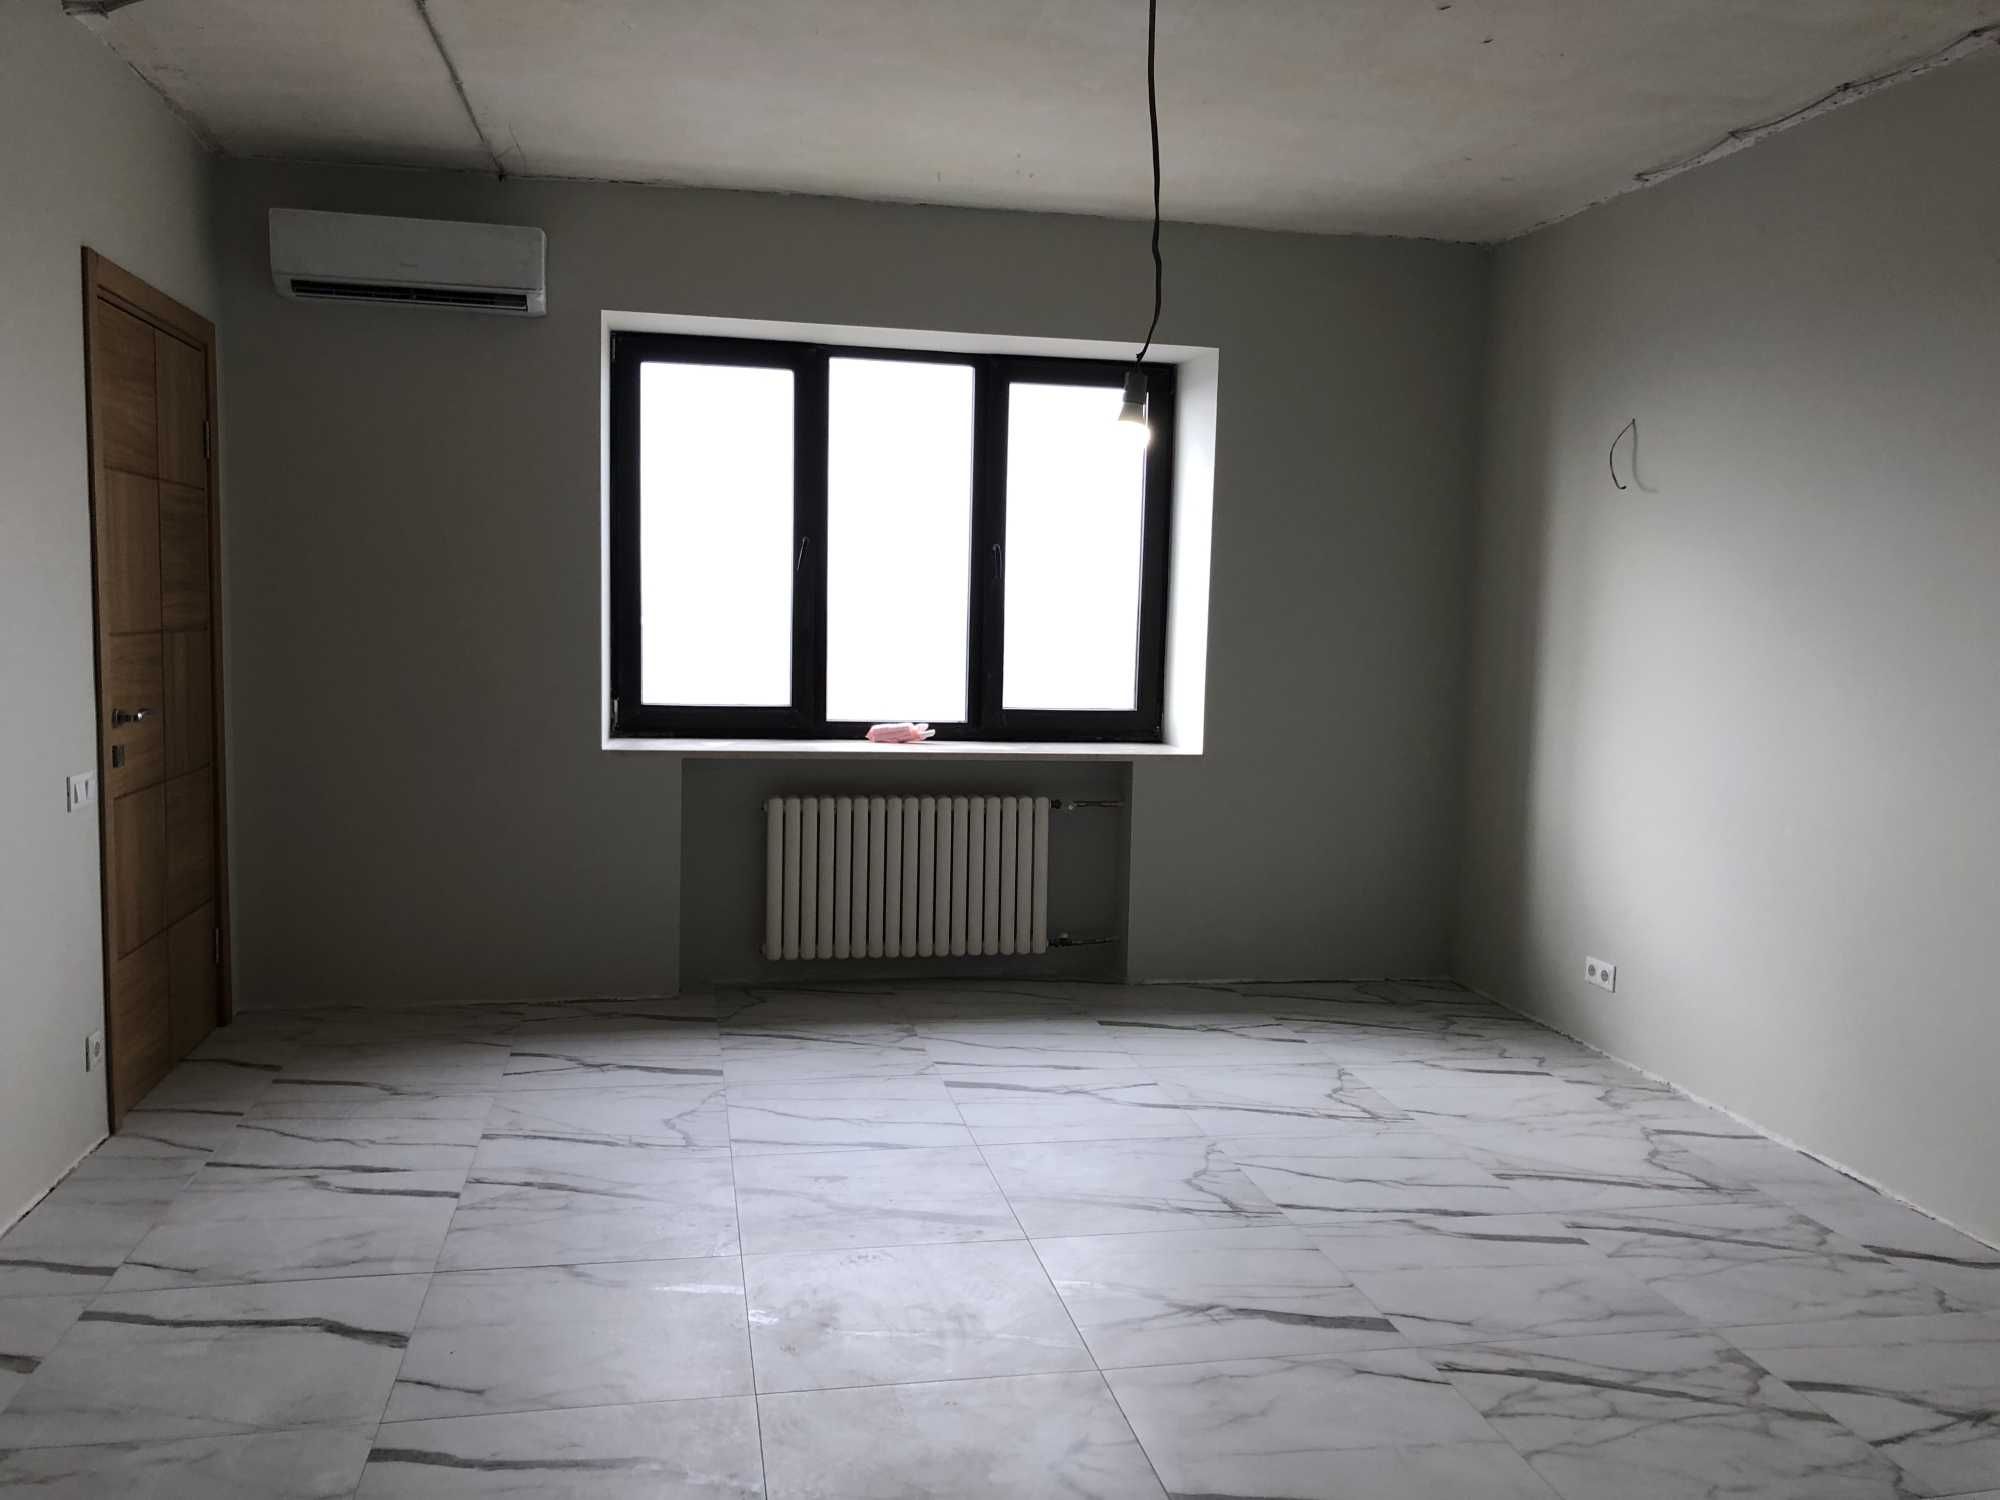 продам 3 кімн квартиру, ремонт 2024 р Солом'янка Протасів Яр Клінічна